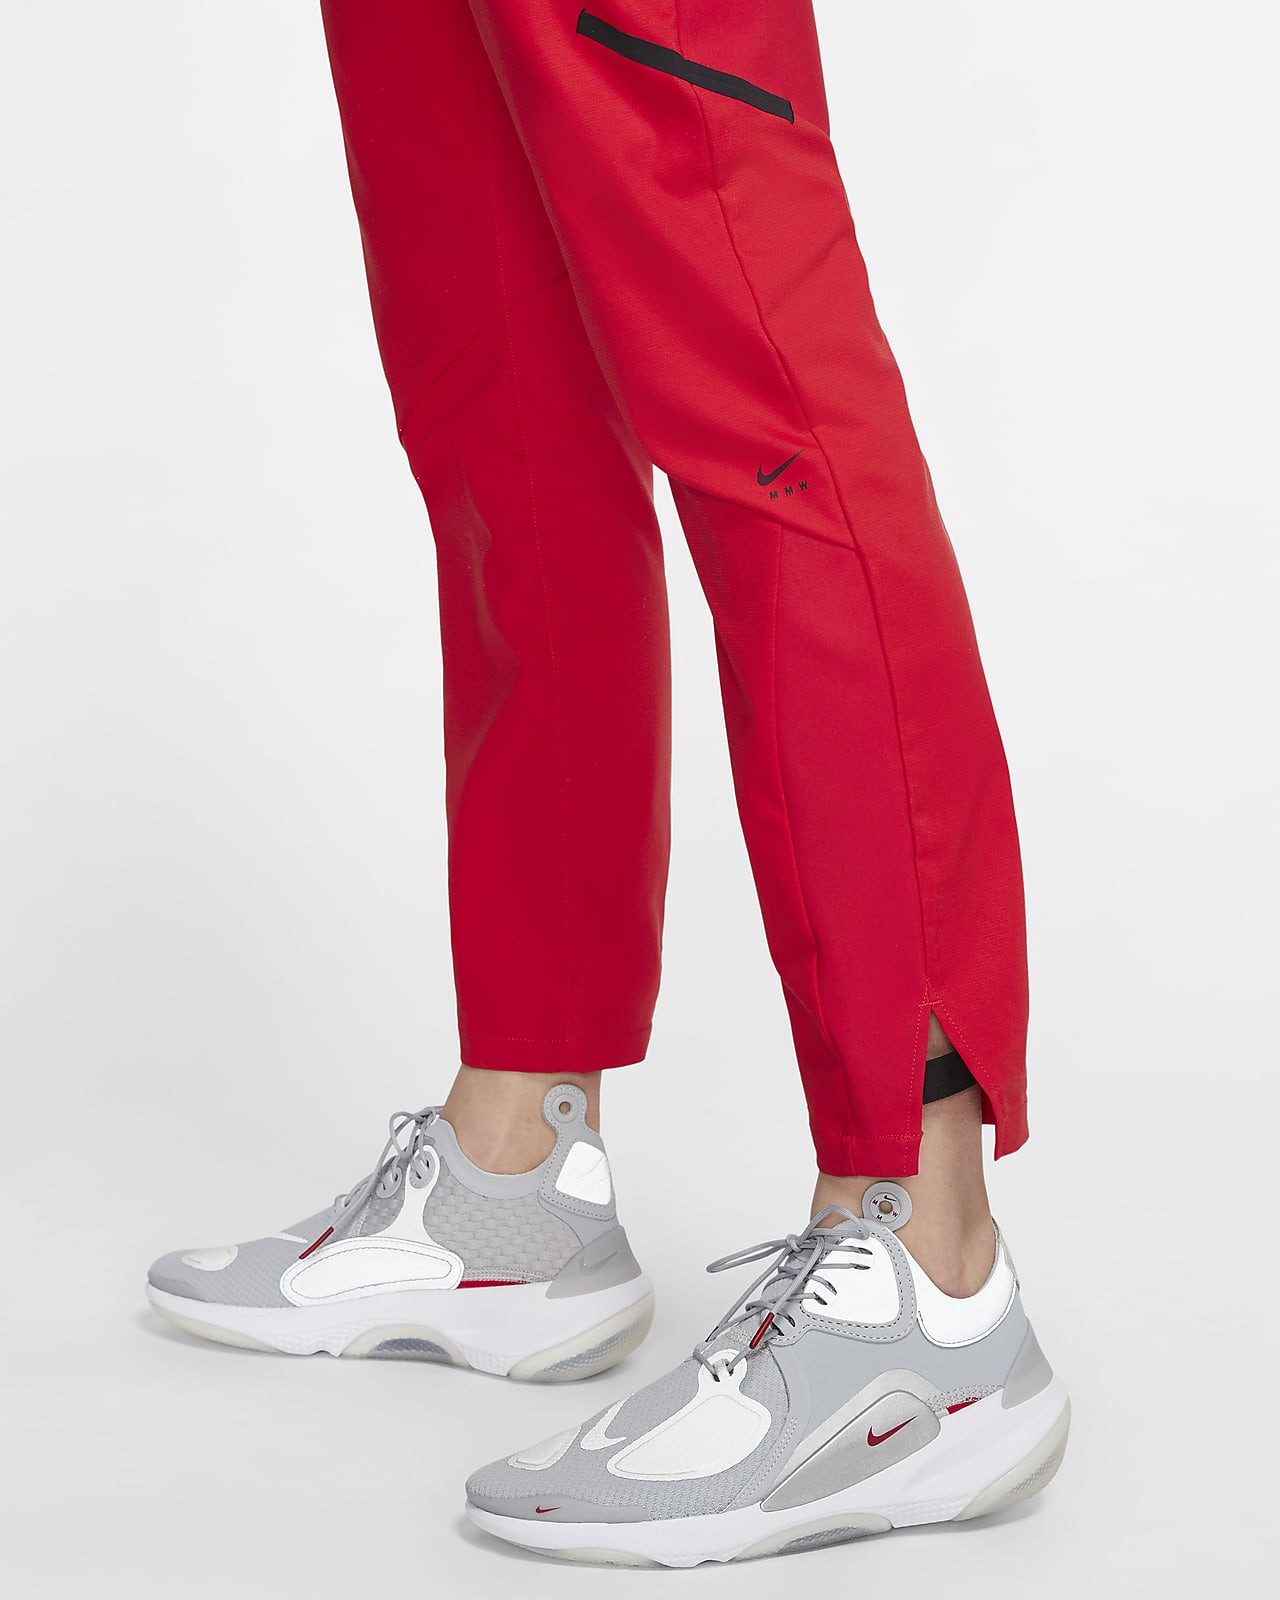 Nike x MMW Women's Trousers. Nike SA